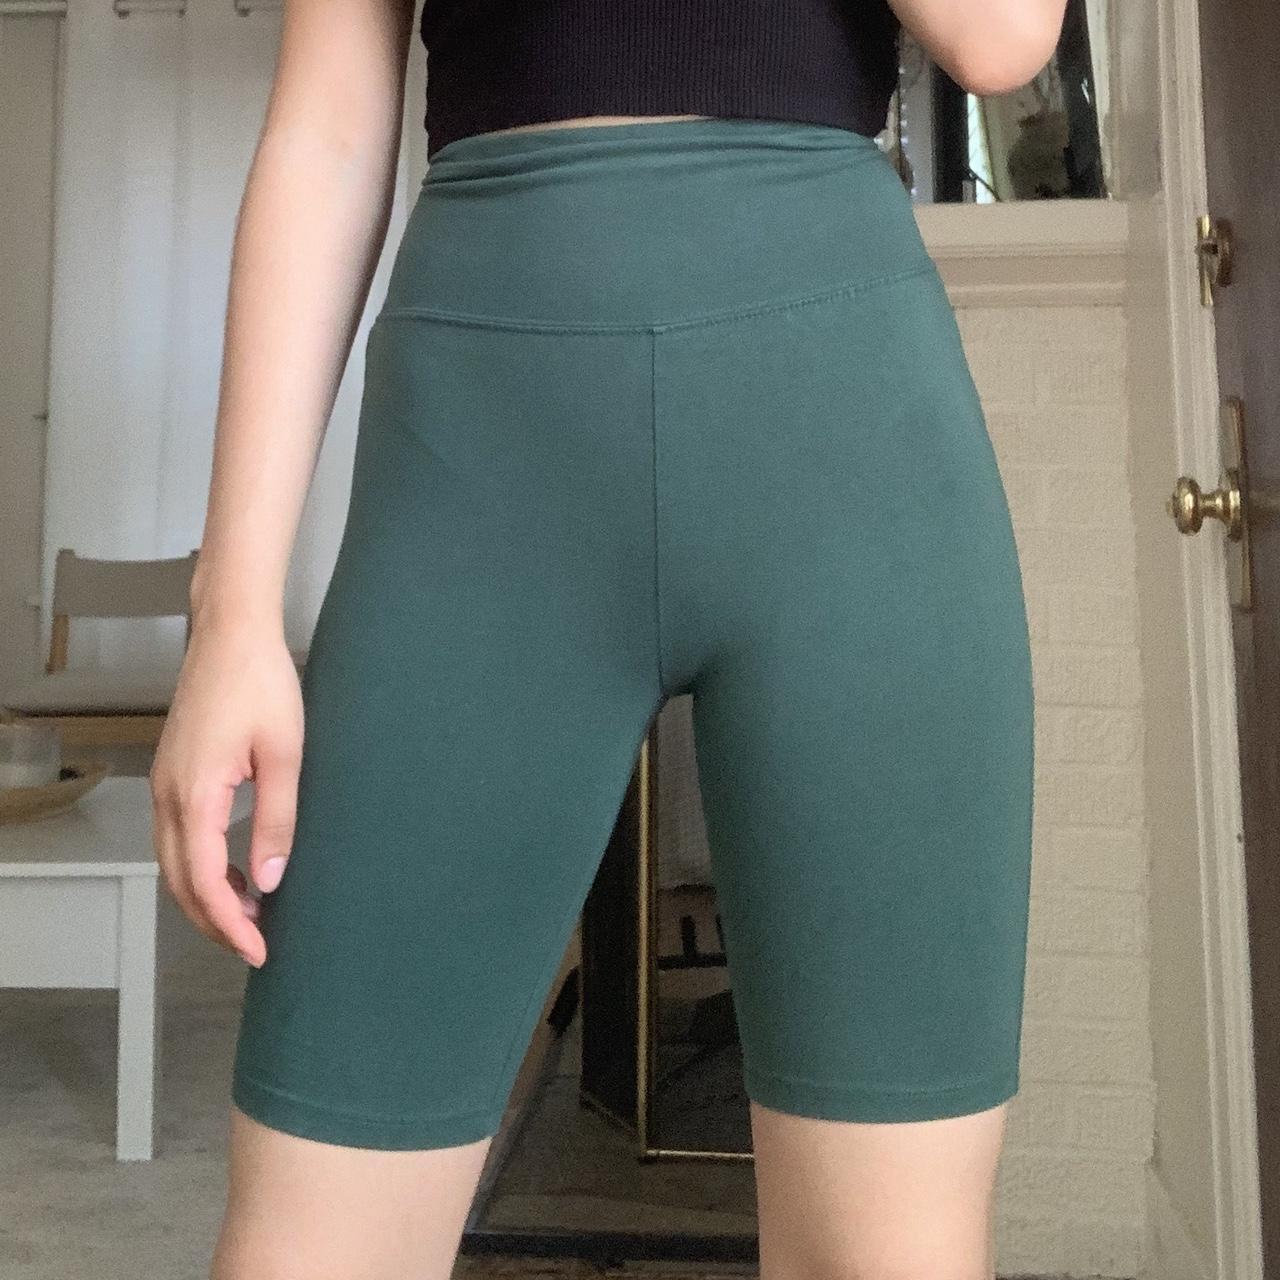 Emerald green biker shorts!! Wear these under a - Depop